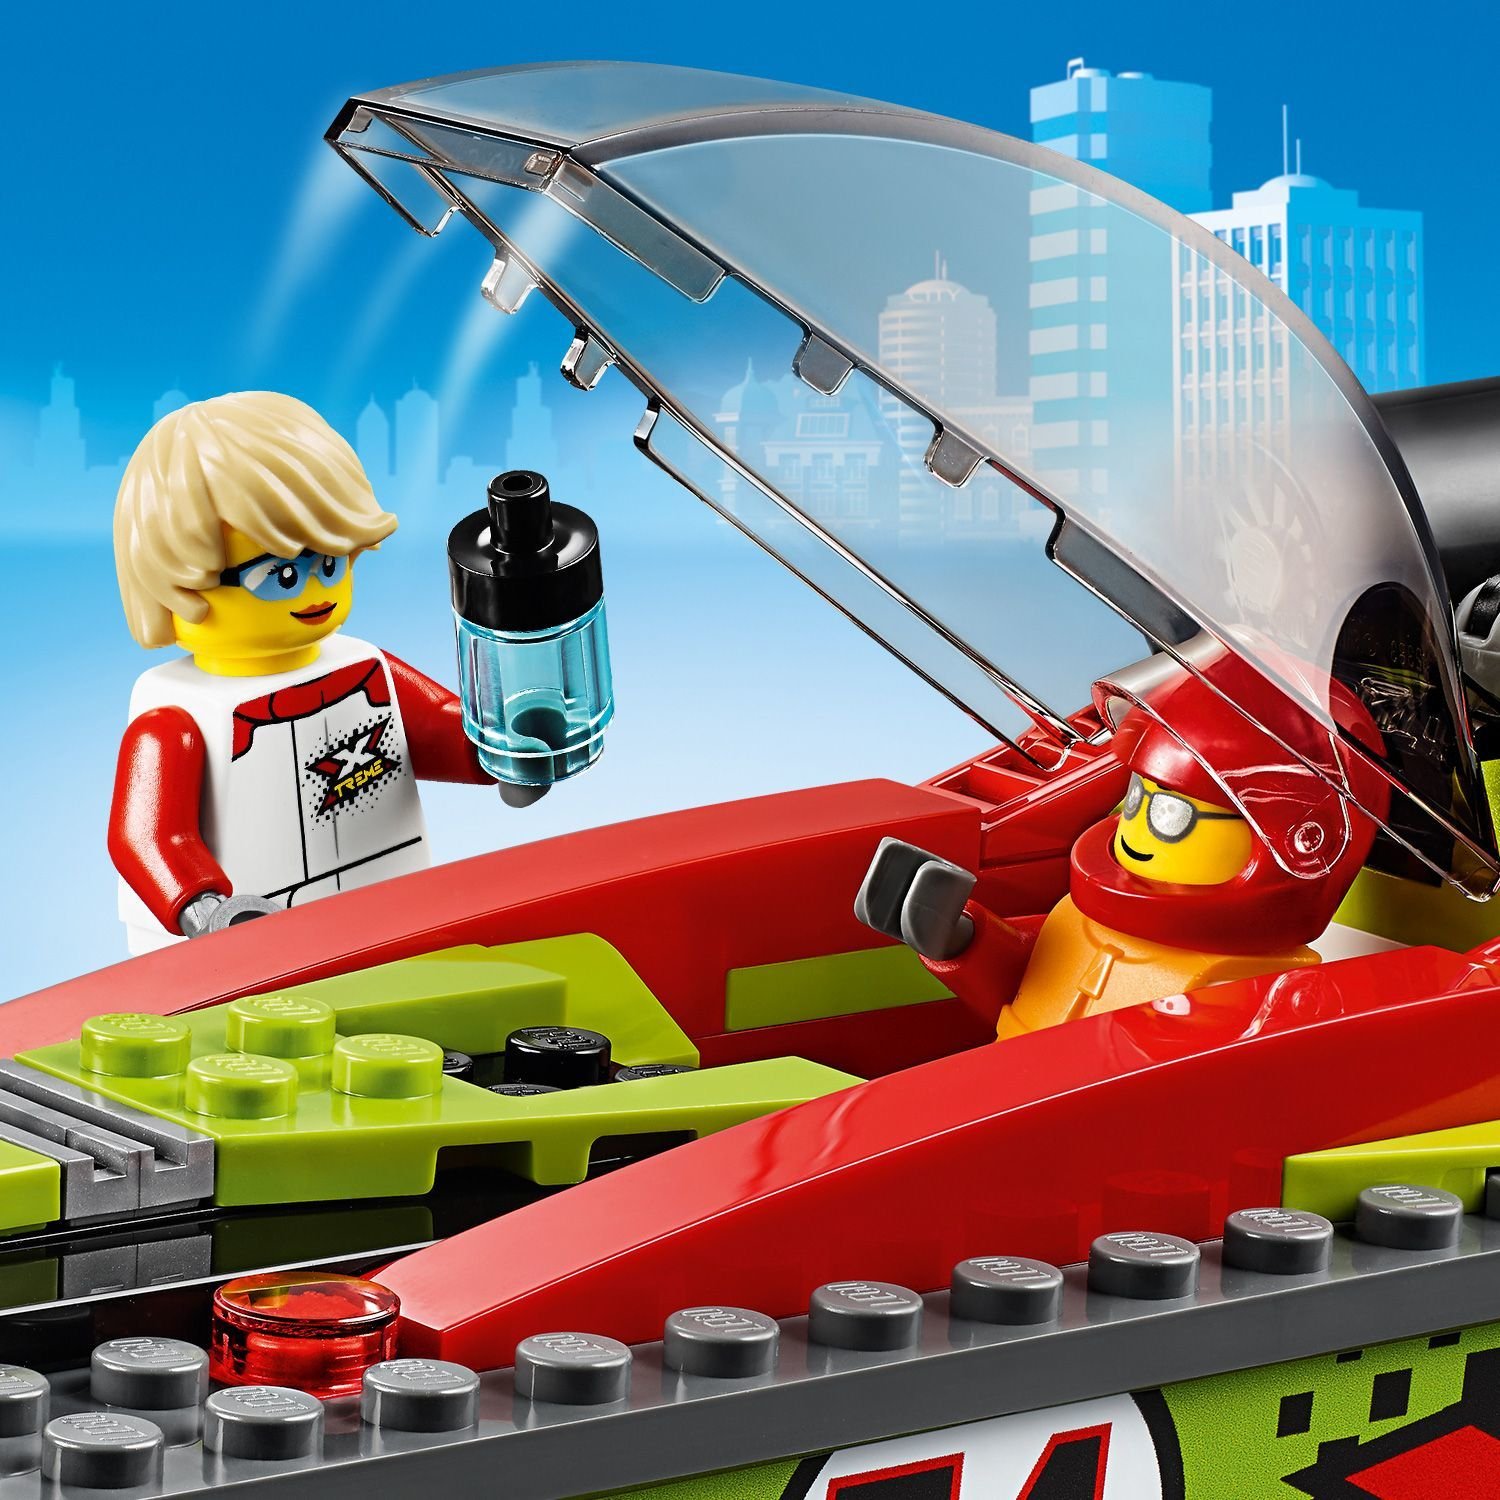 Lego City 60254 Транспортировщик скоростных катеров